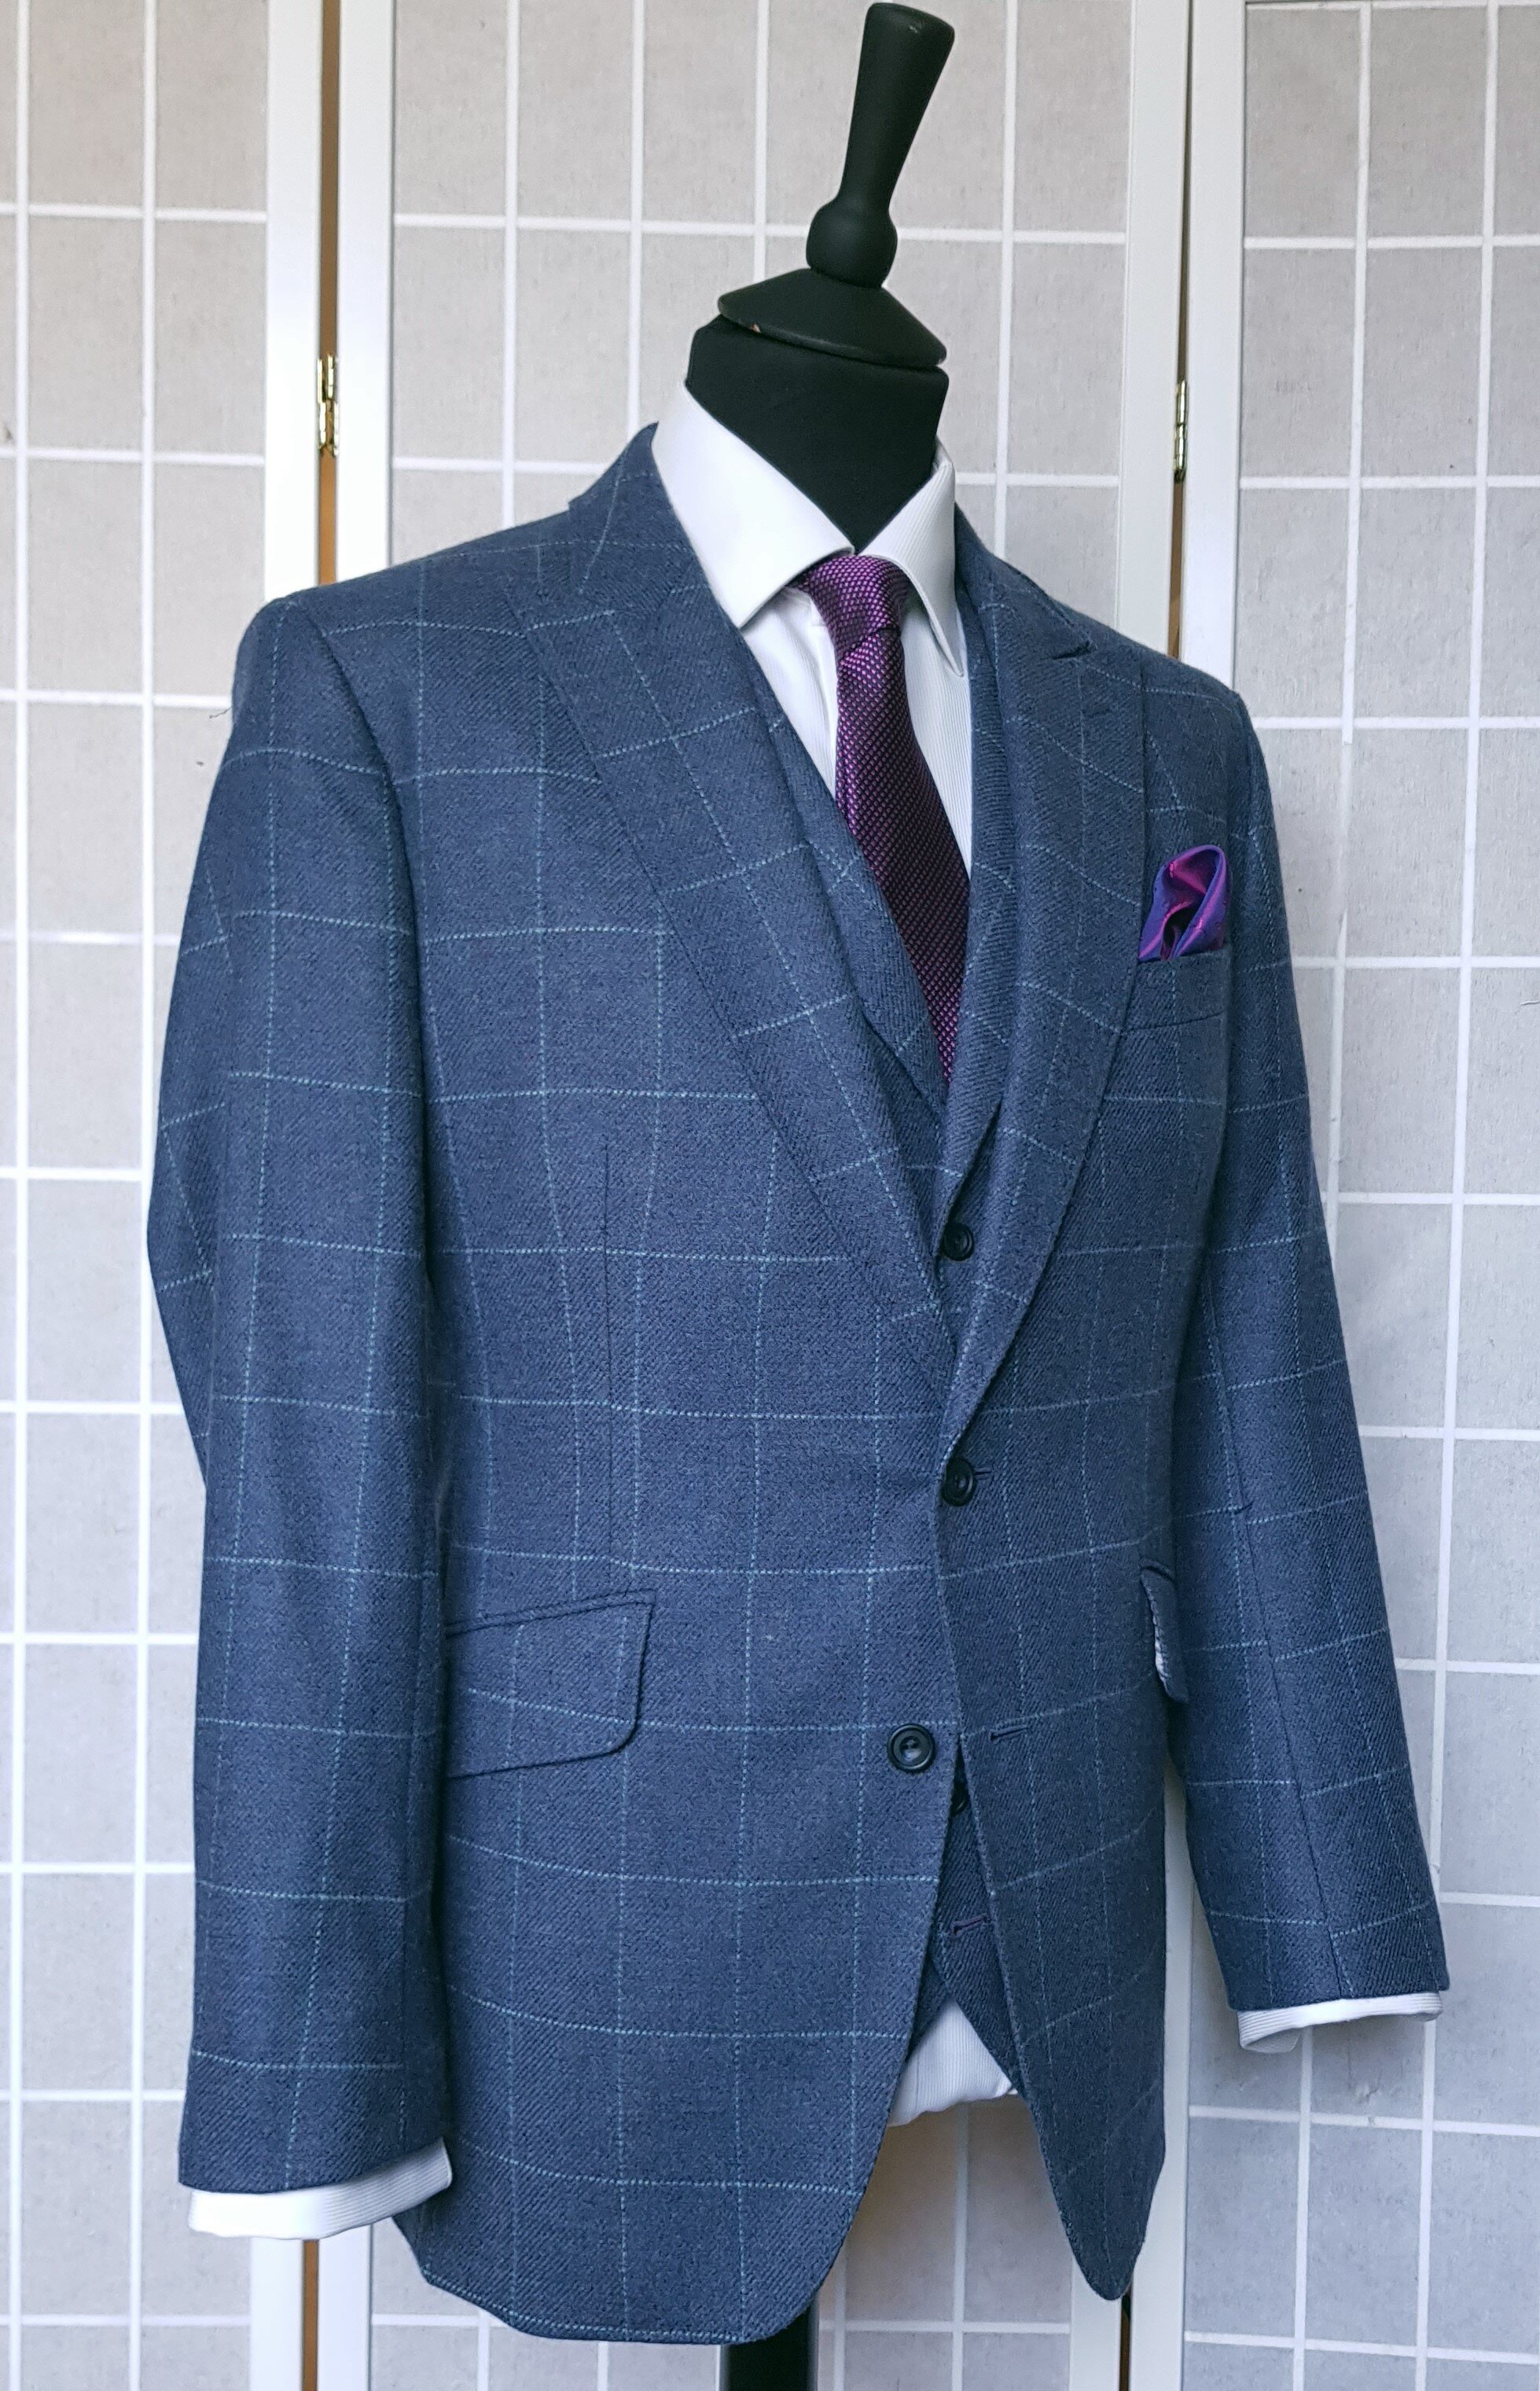 3 Piece suit in Blue Check Tweed (18).jpg